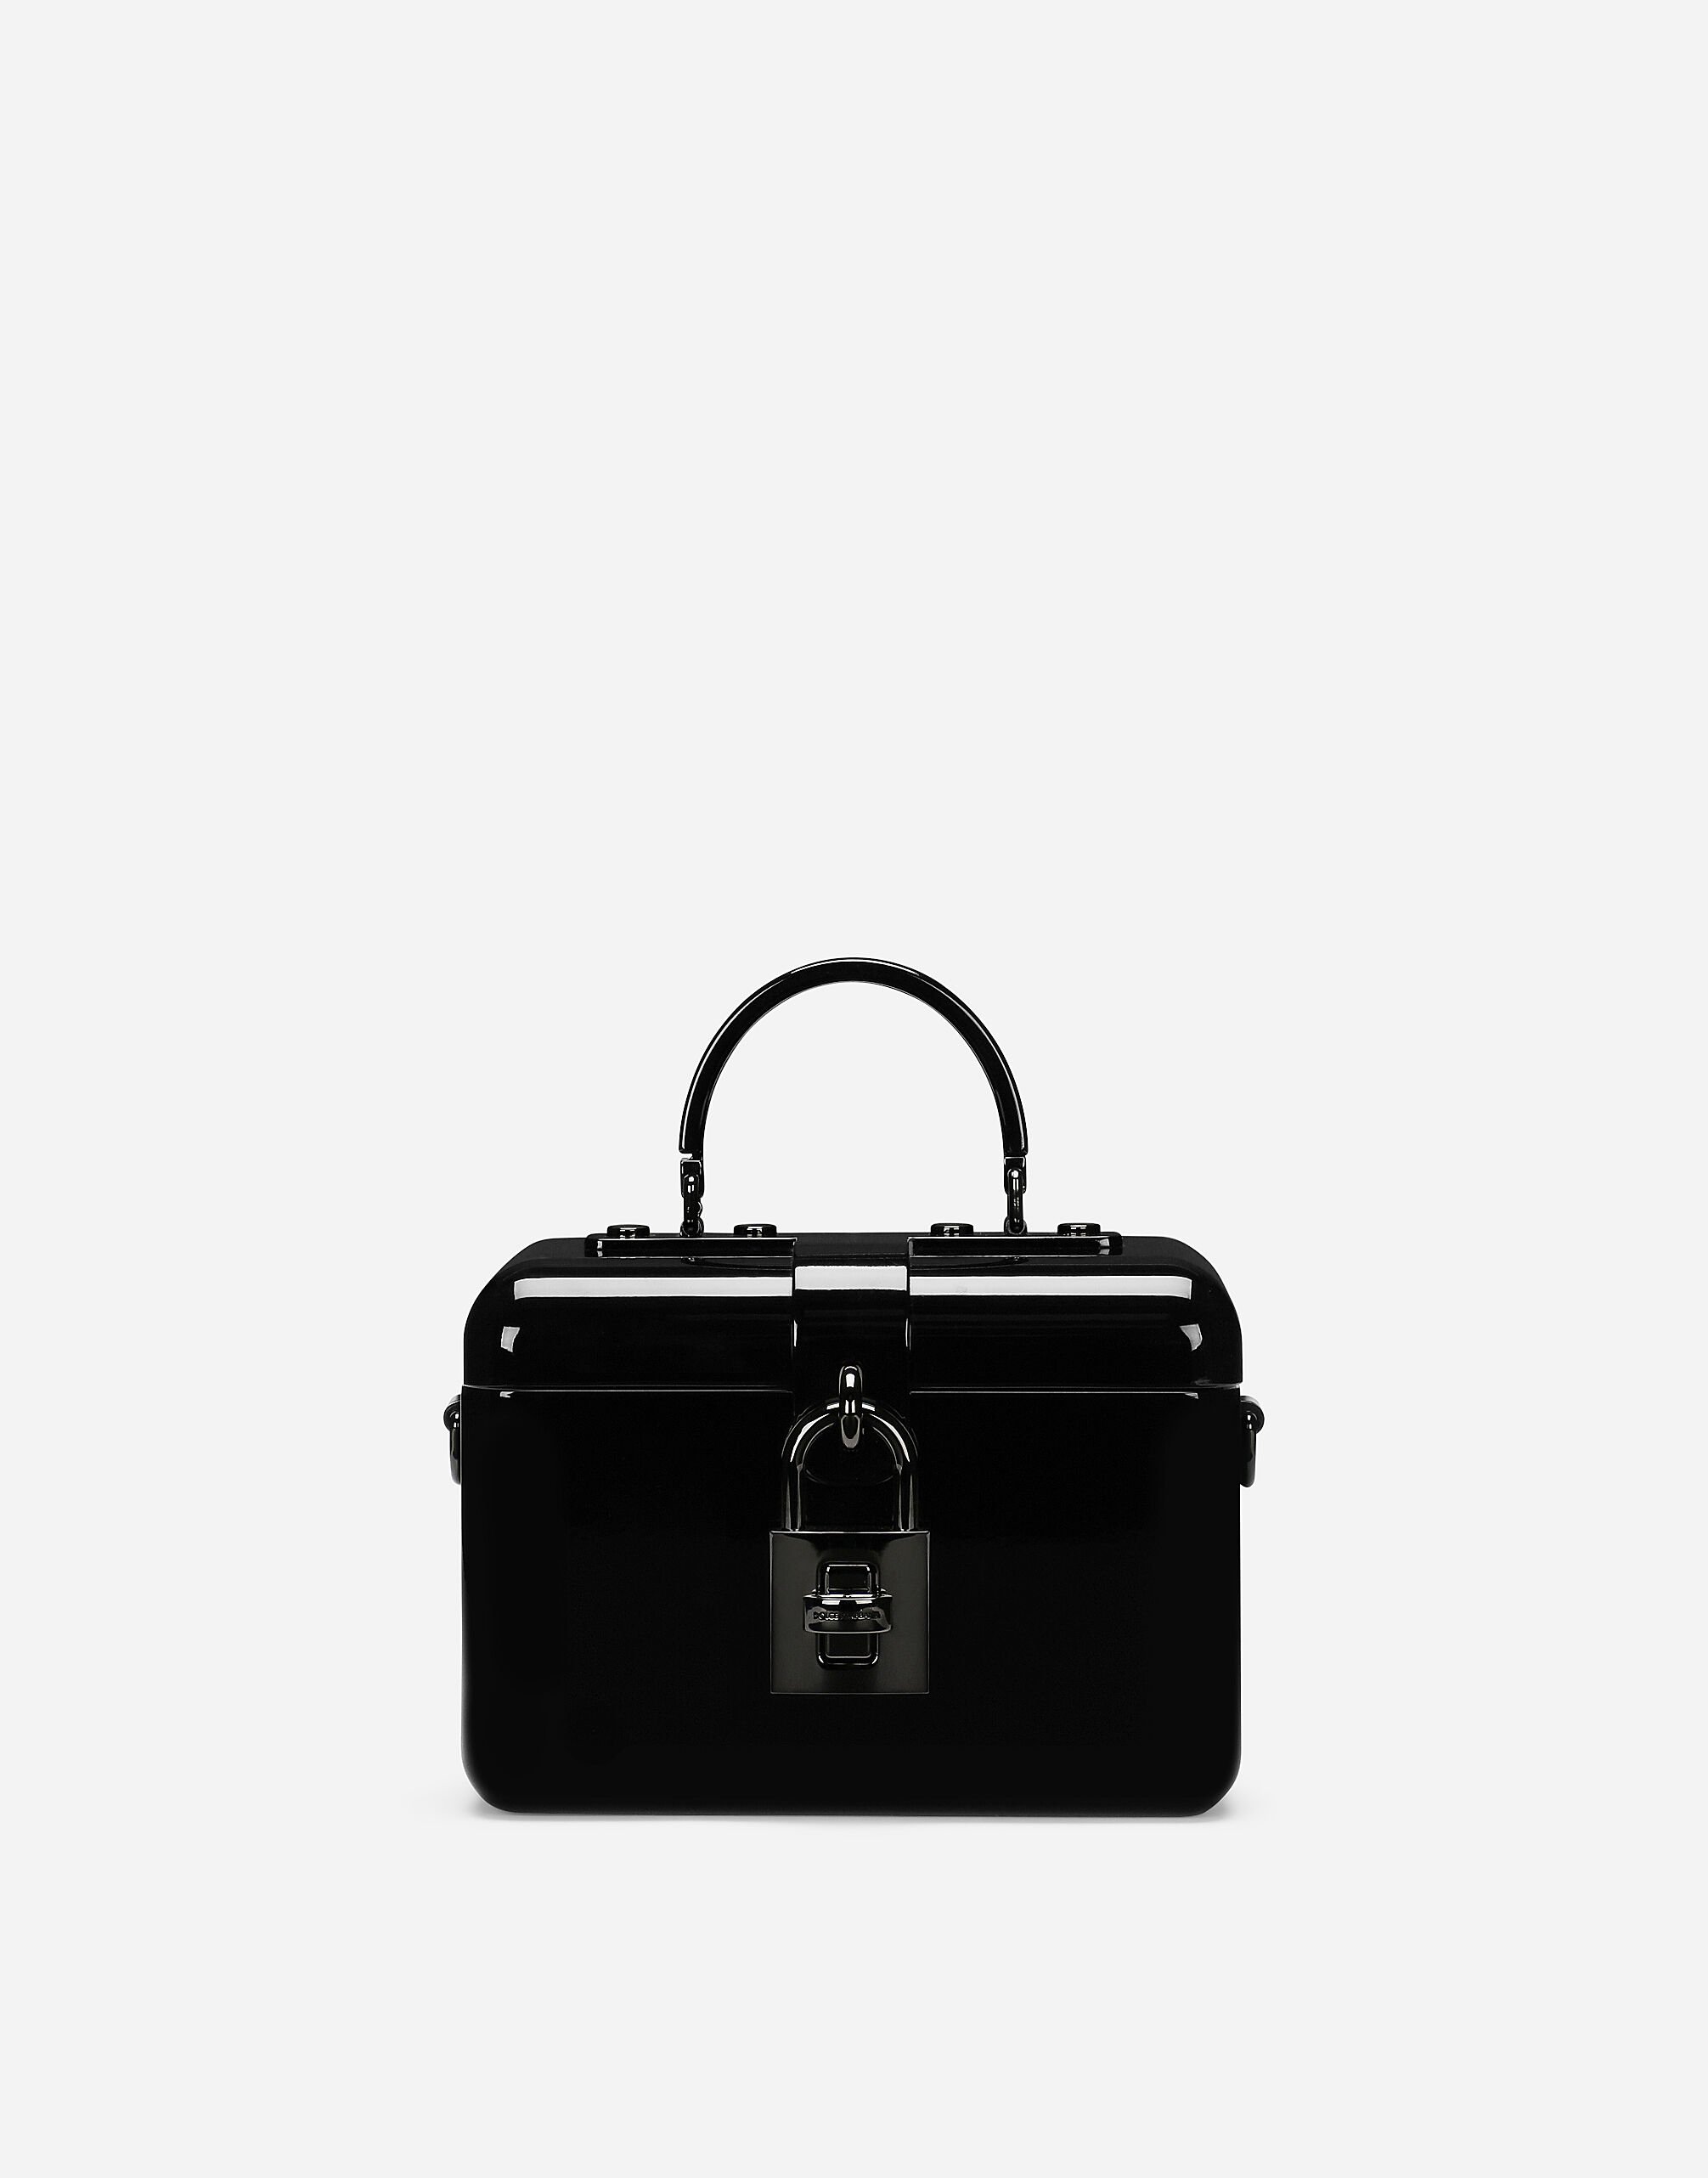 Dolce & Gabbana Dolce box handbag Black BB6002A1001